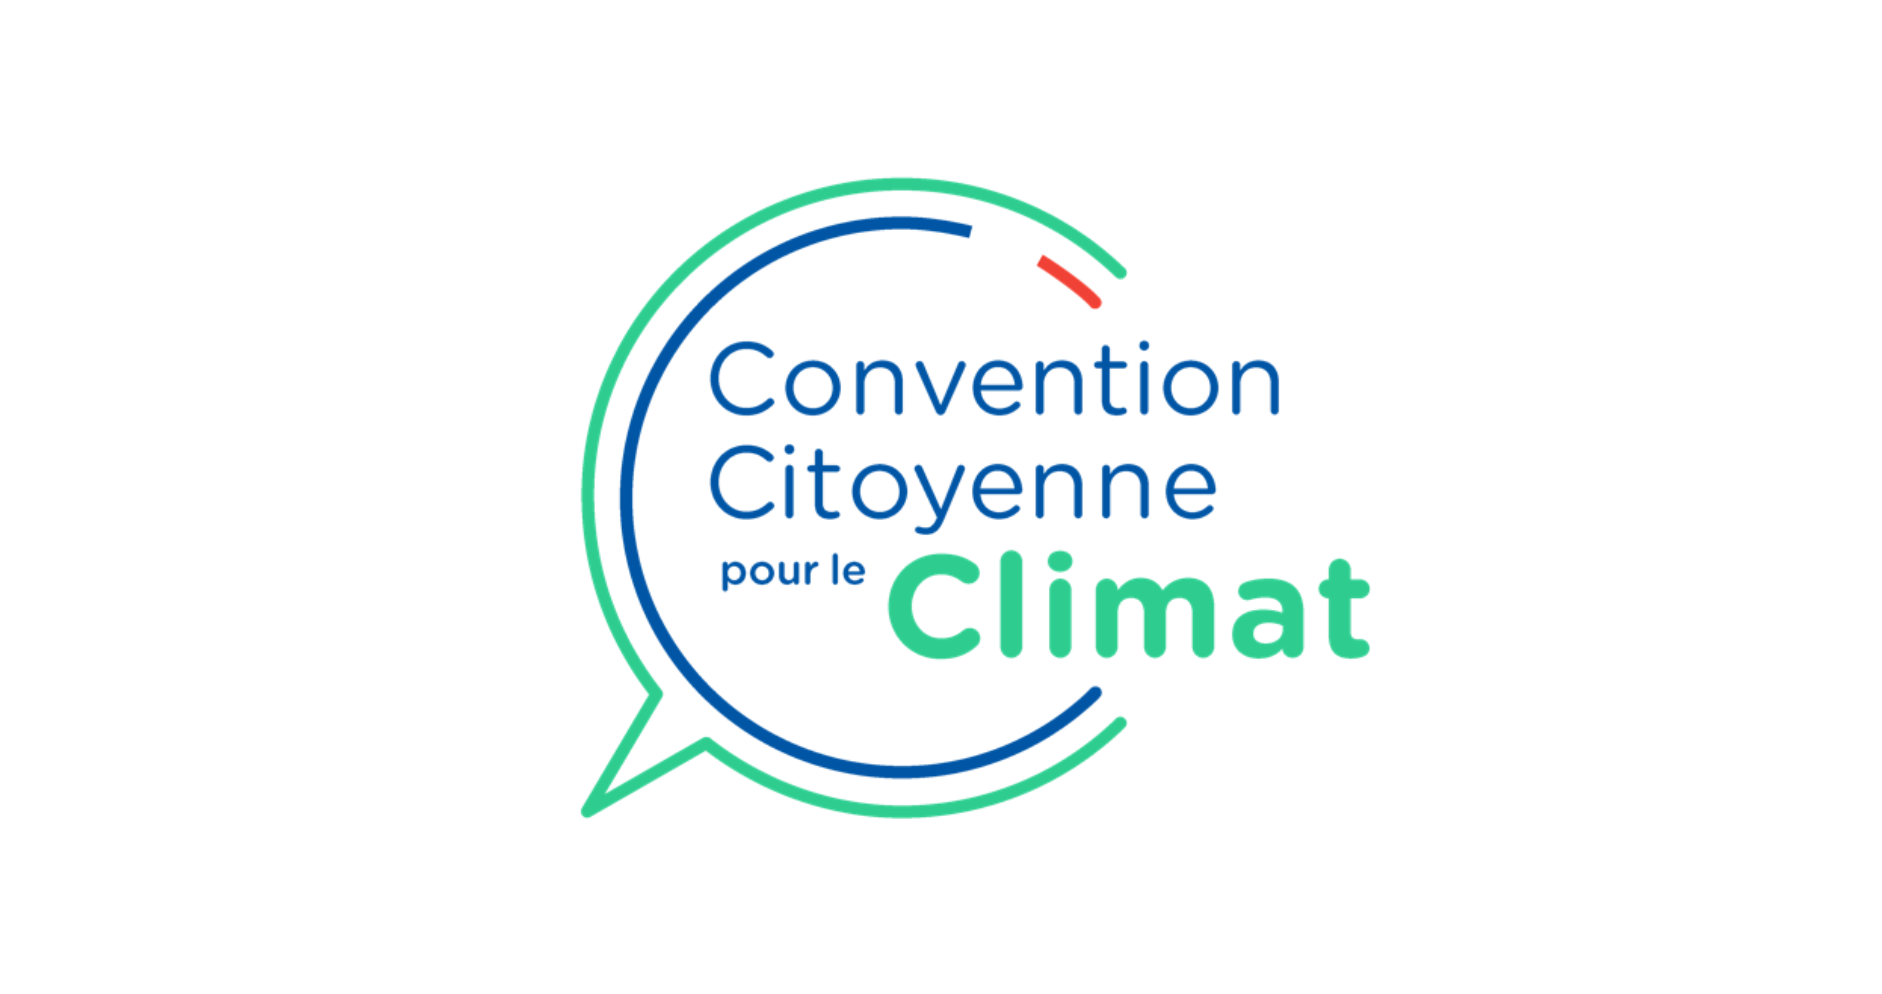 Convention citoyenne pour le climat : le président de la République envisage un référendum